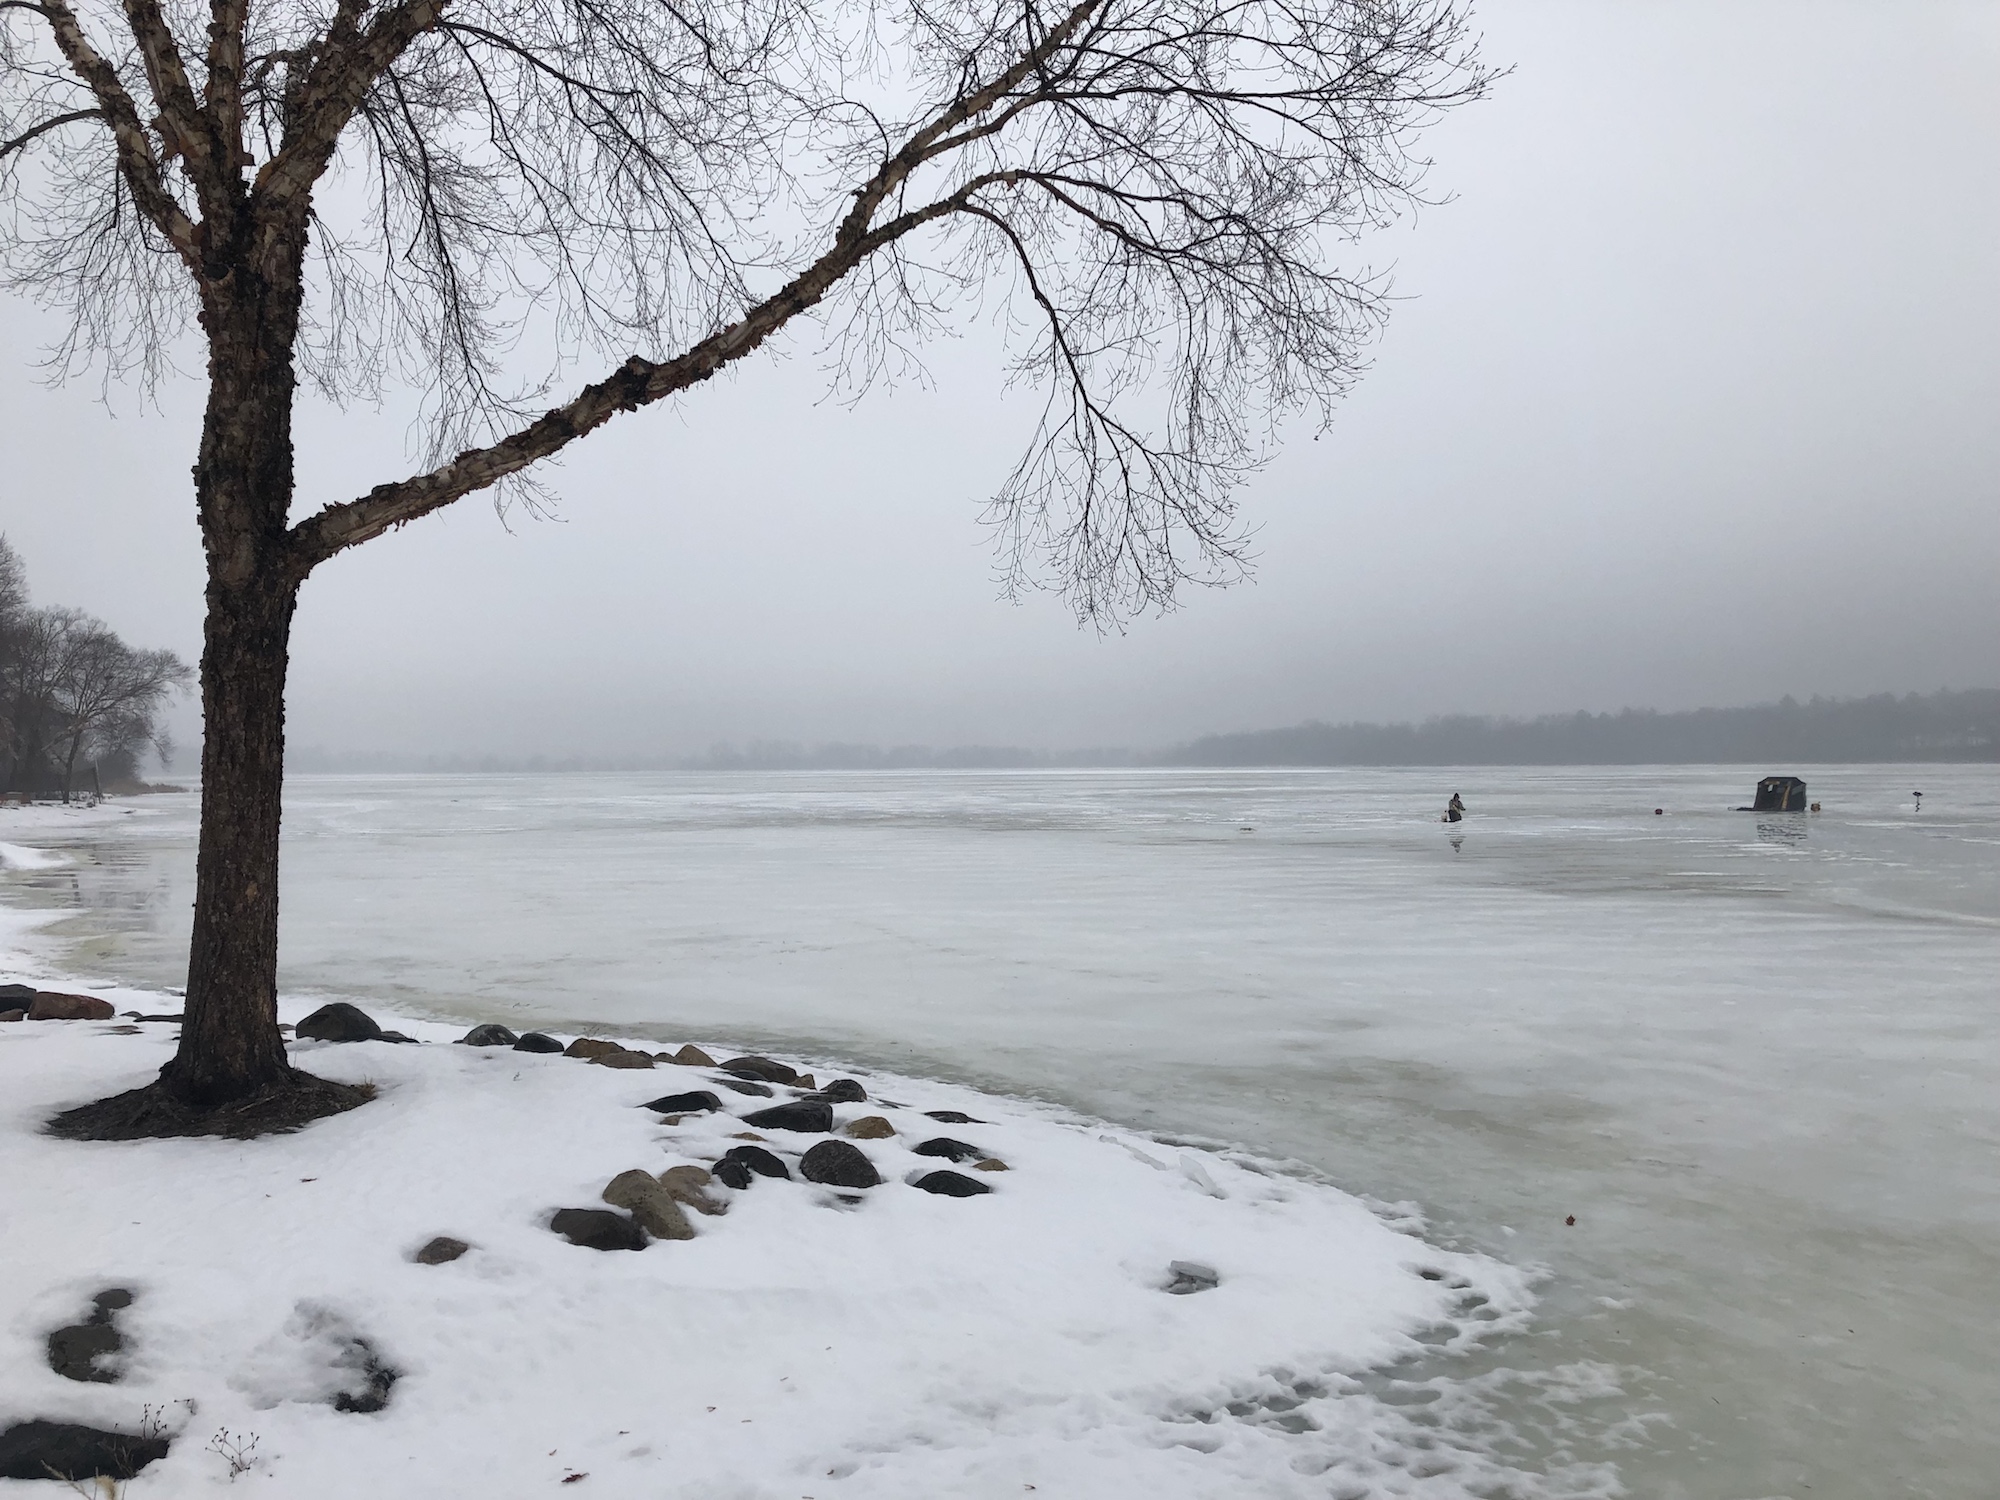 Lake Wingra on February 3, 2019.